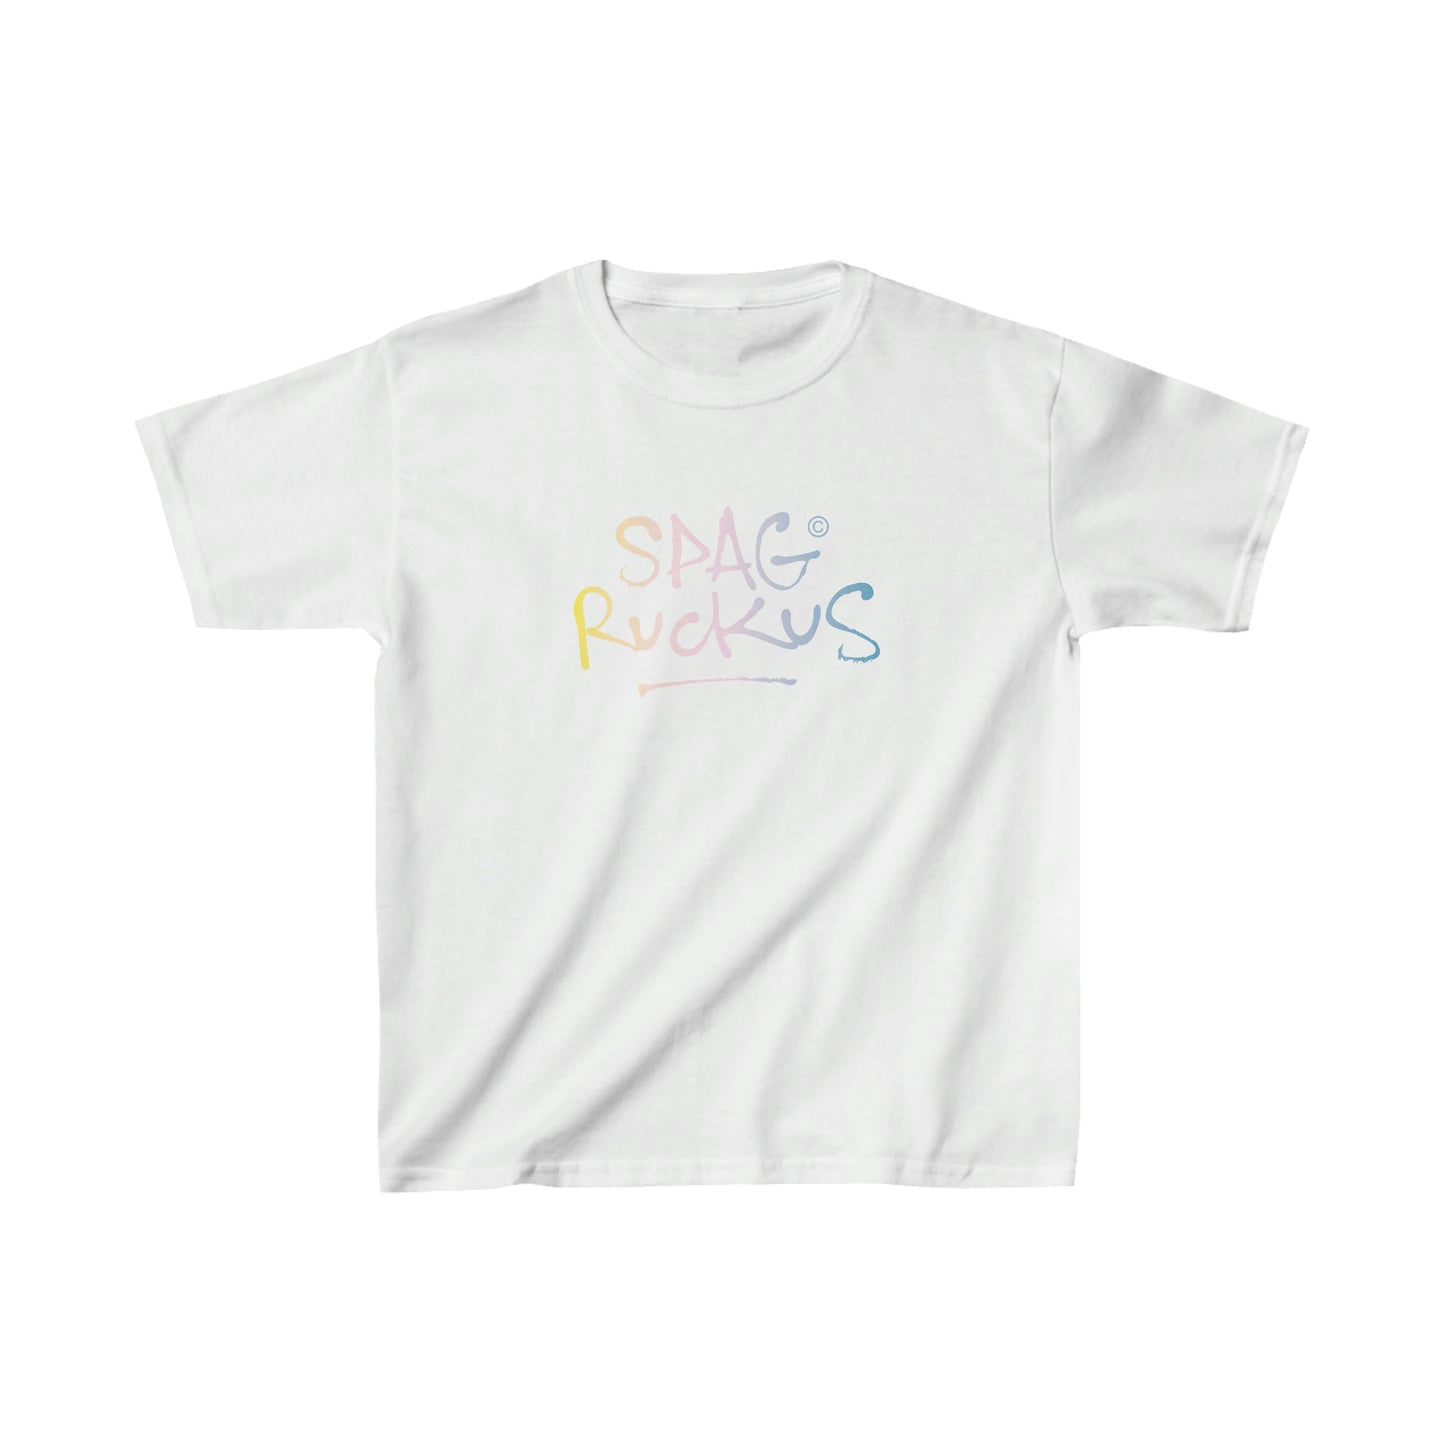 EUROPE - Spag Ruckus Kids T-Shirt